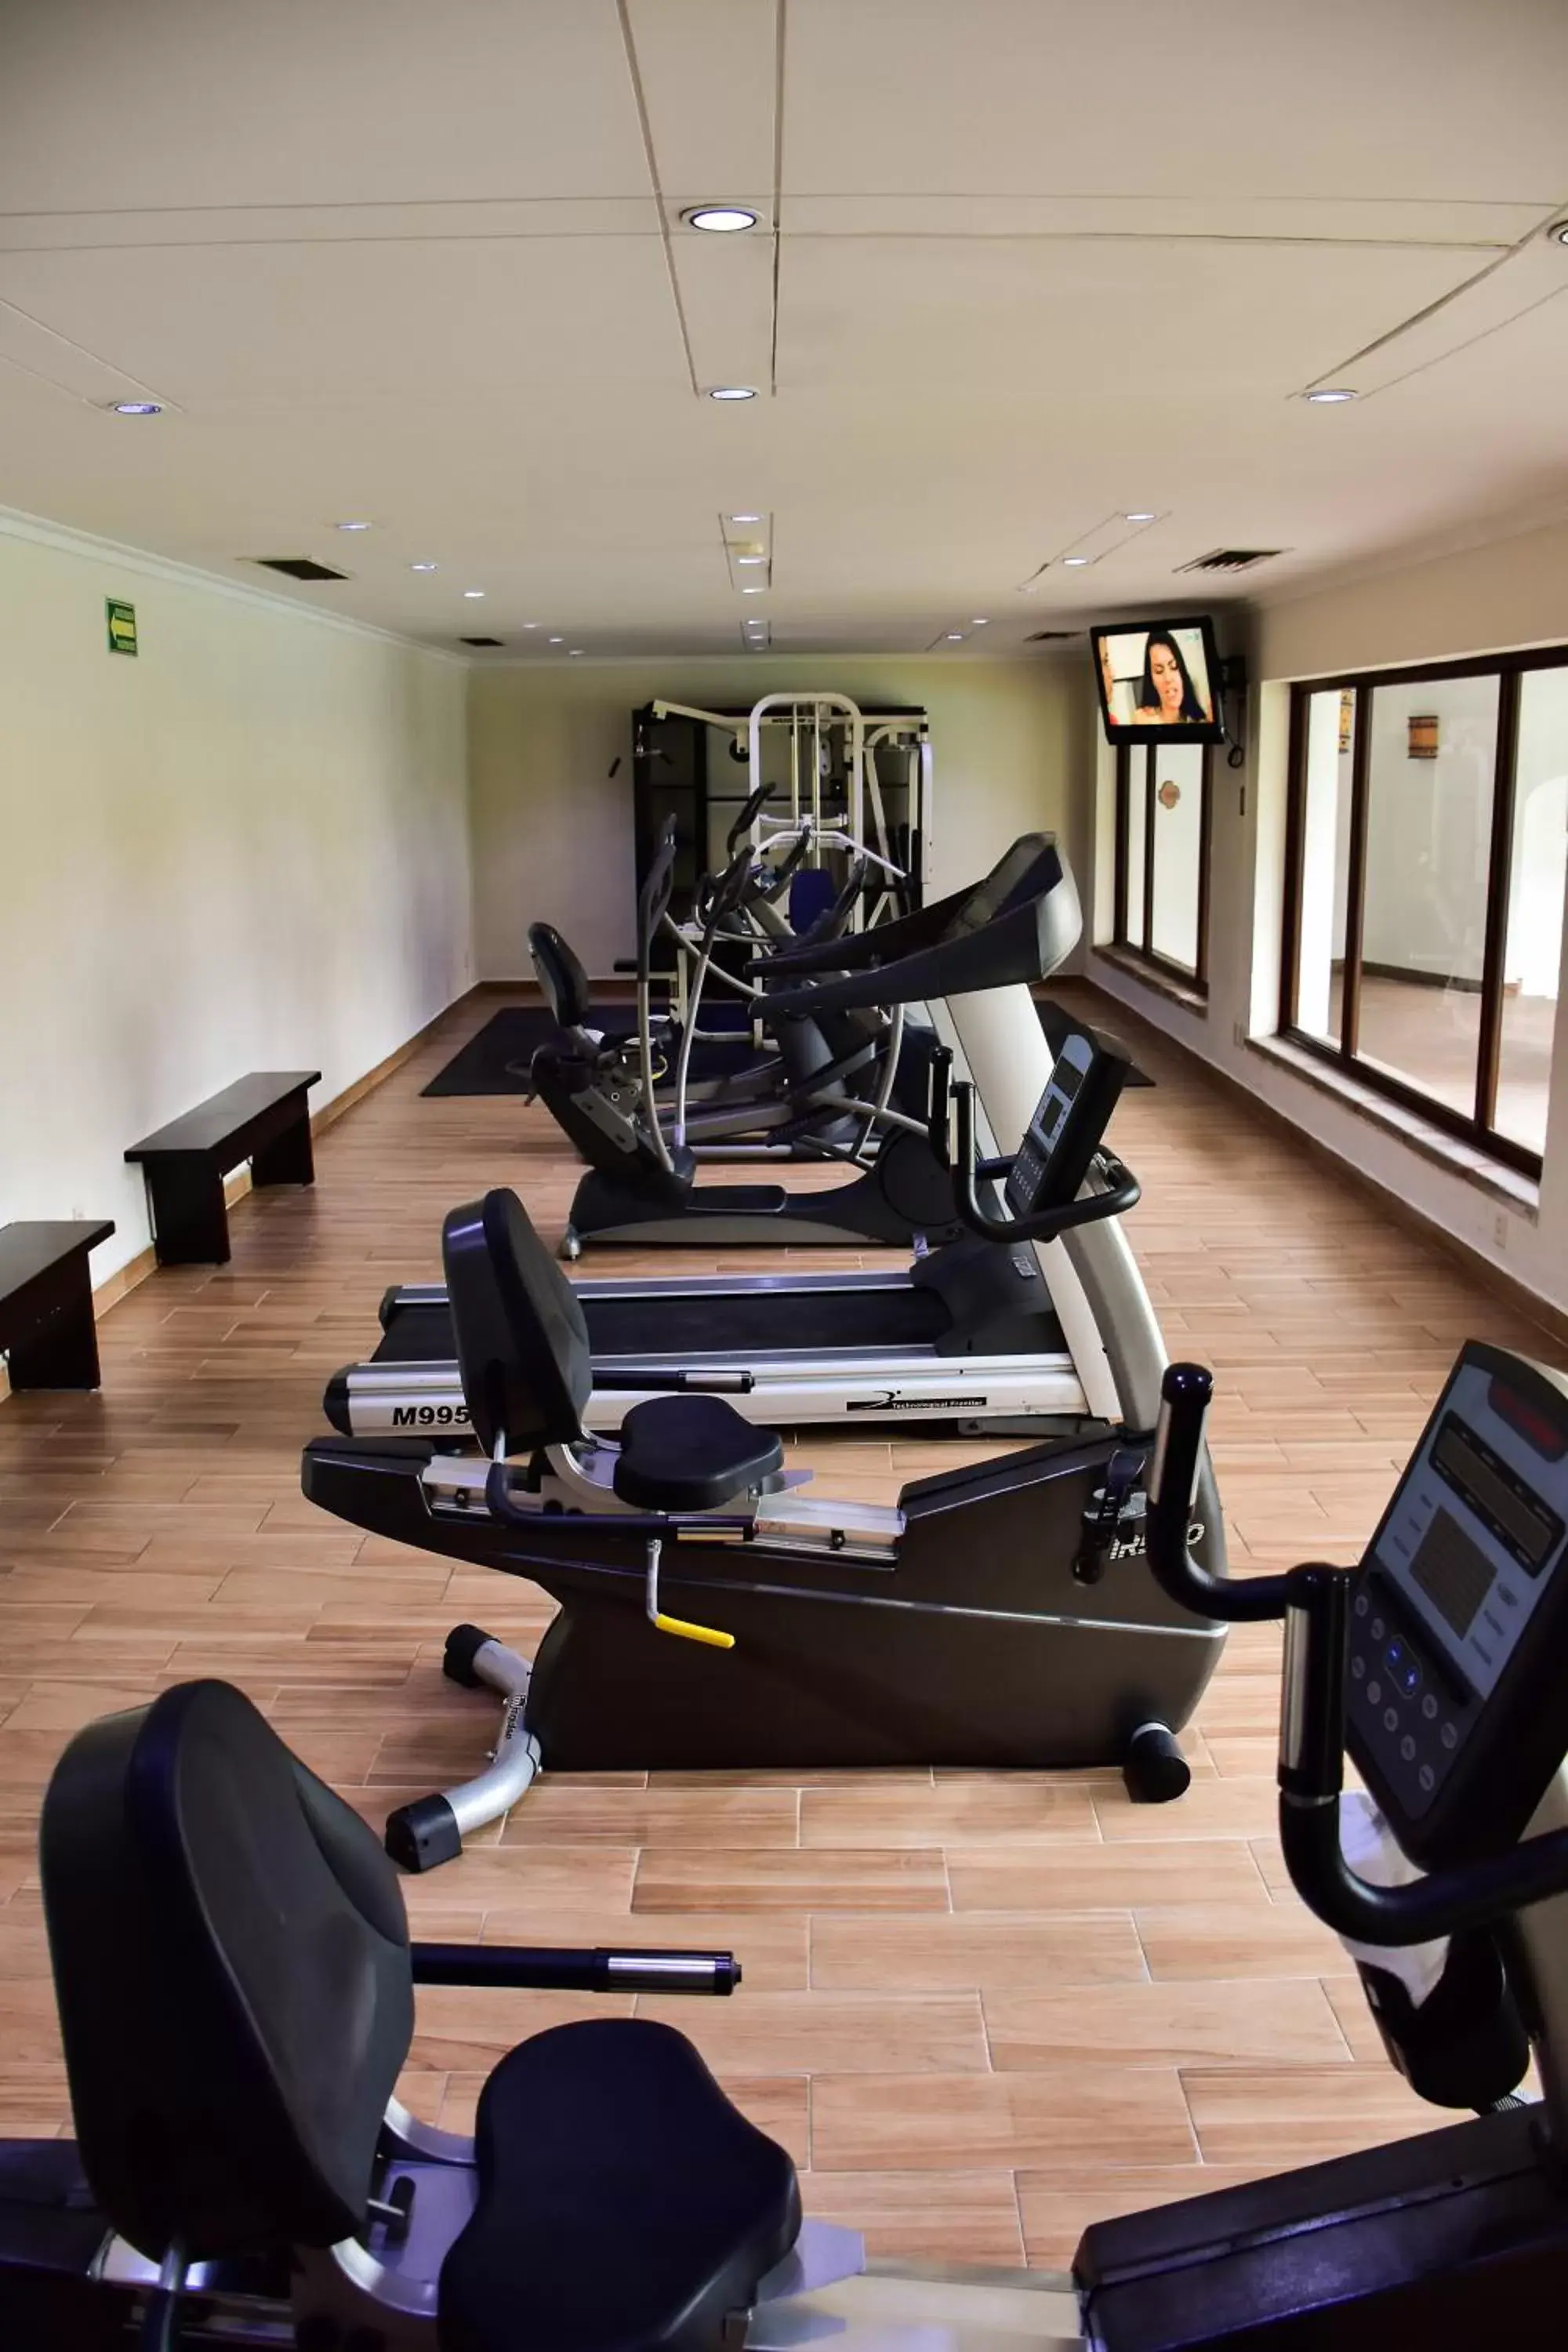 Fitness centre/facilities, Fitness Center/Facilities in Hotel Guadalajara Plaza Ejecutivo Lopez Mateos